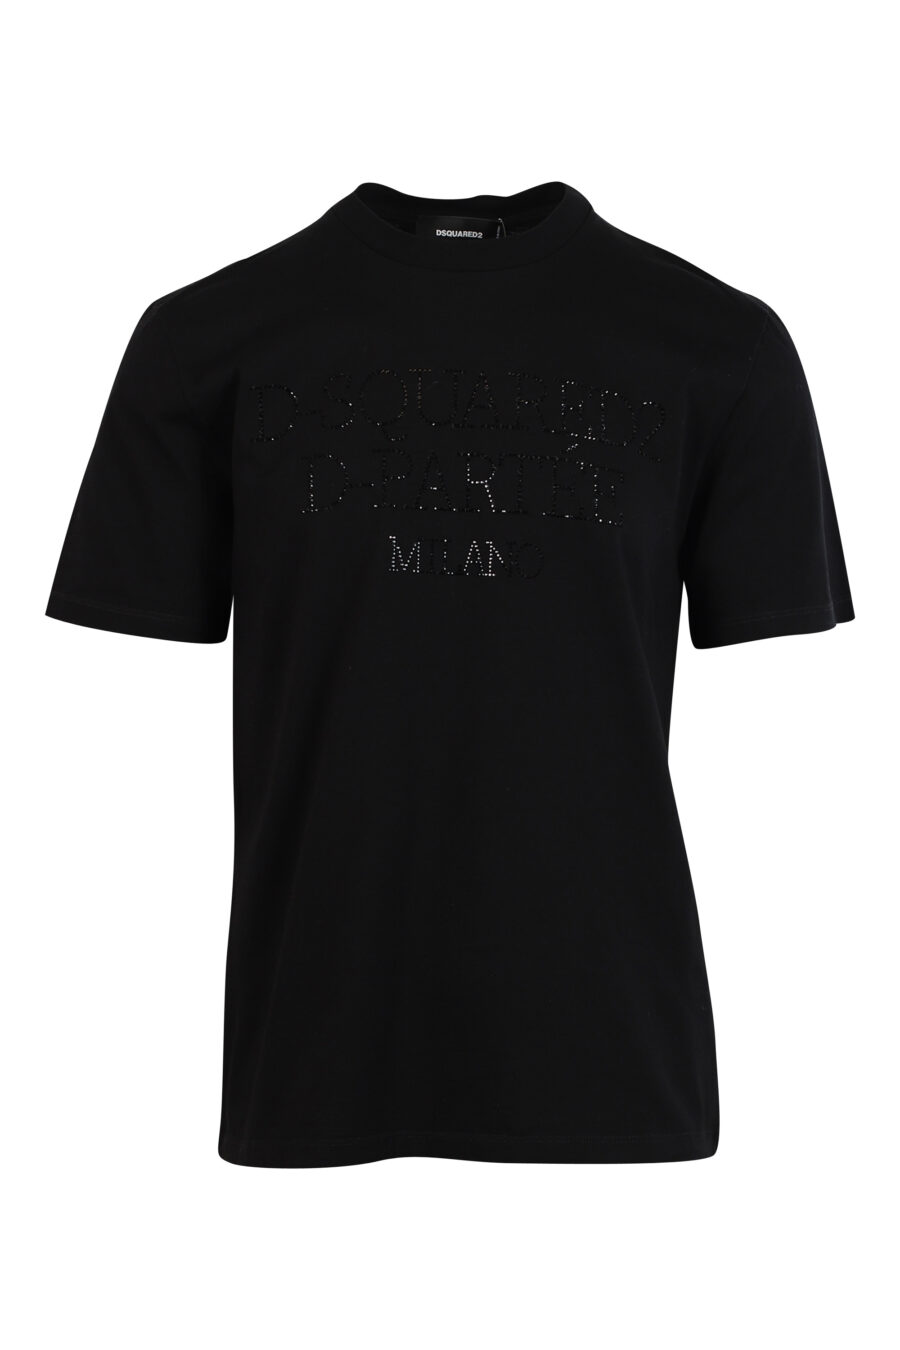 Camiseta negra con maxilogo en relieve negro - 8052134990285